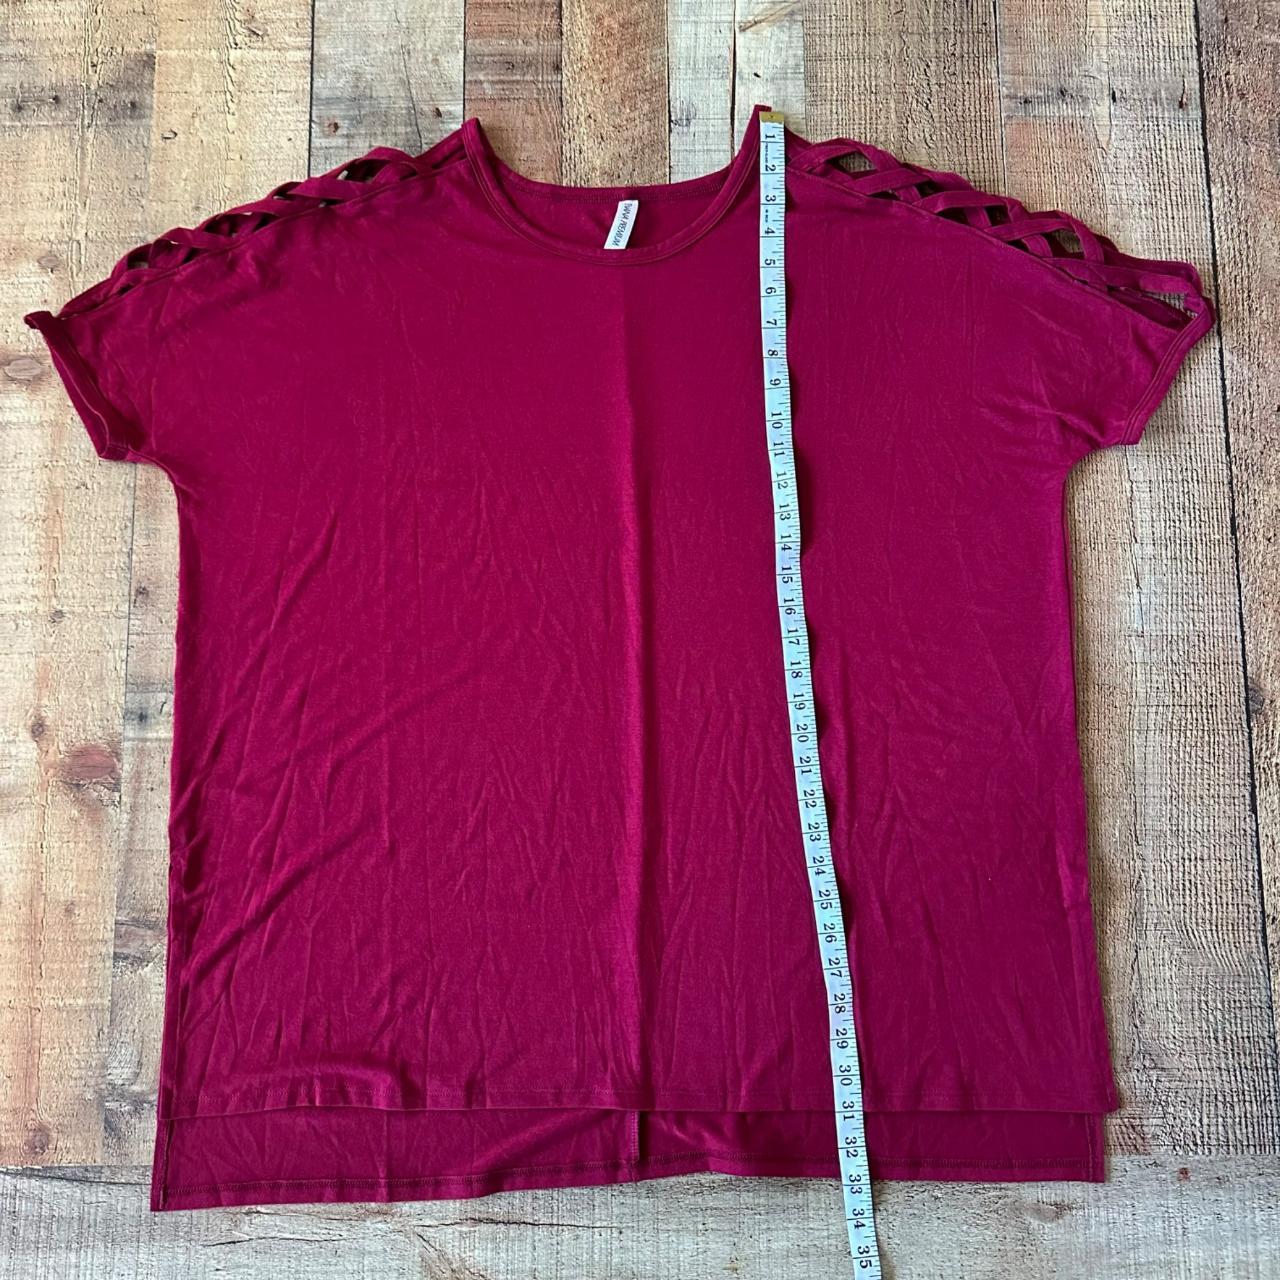 Zenana Premium maroon red crew neck shirt women's - Depop